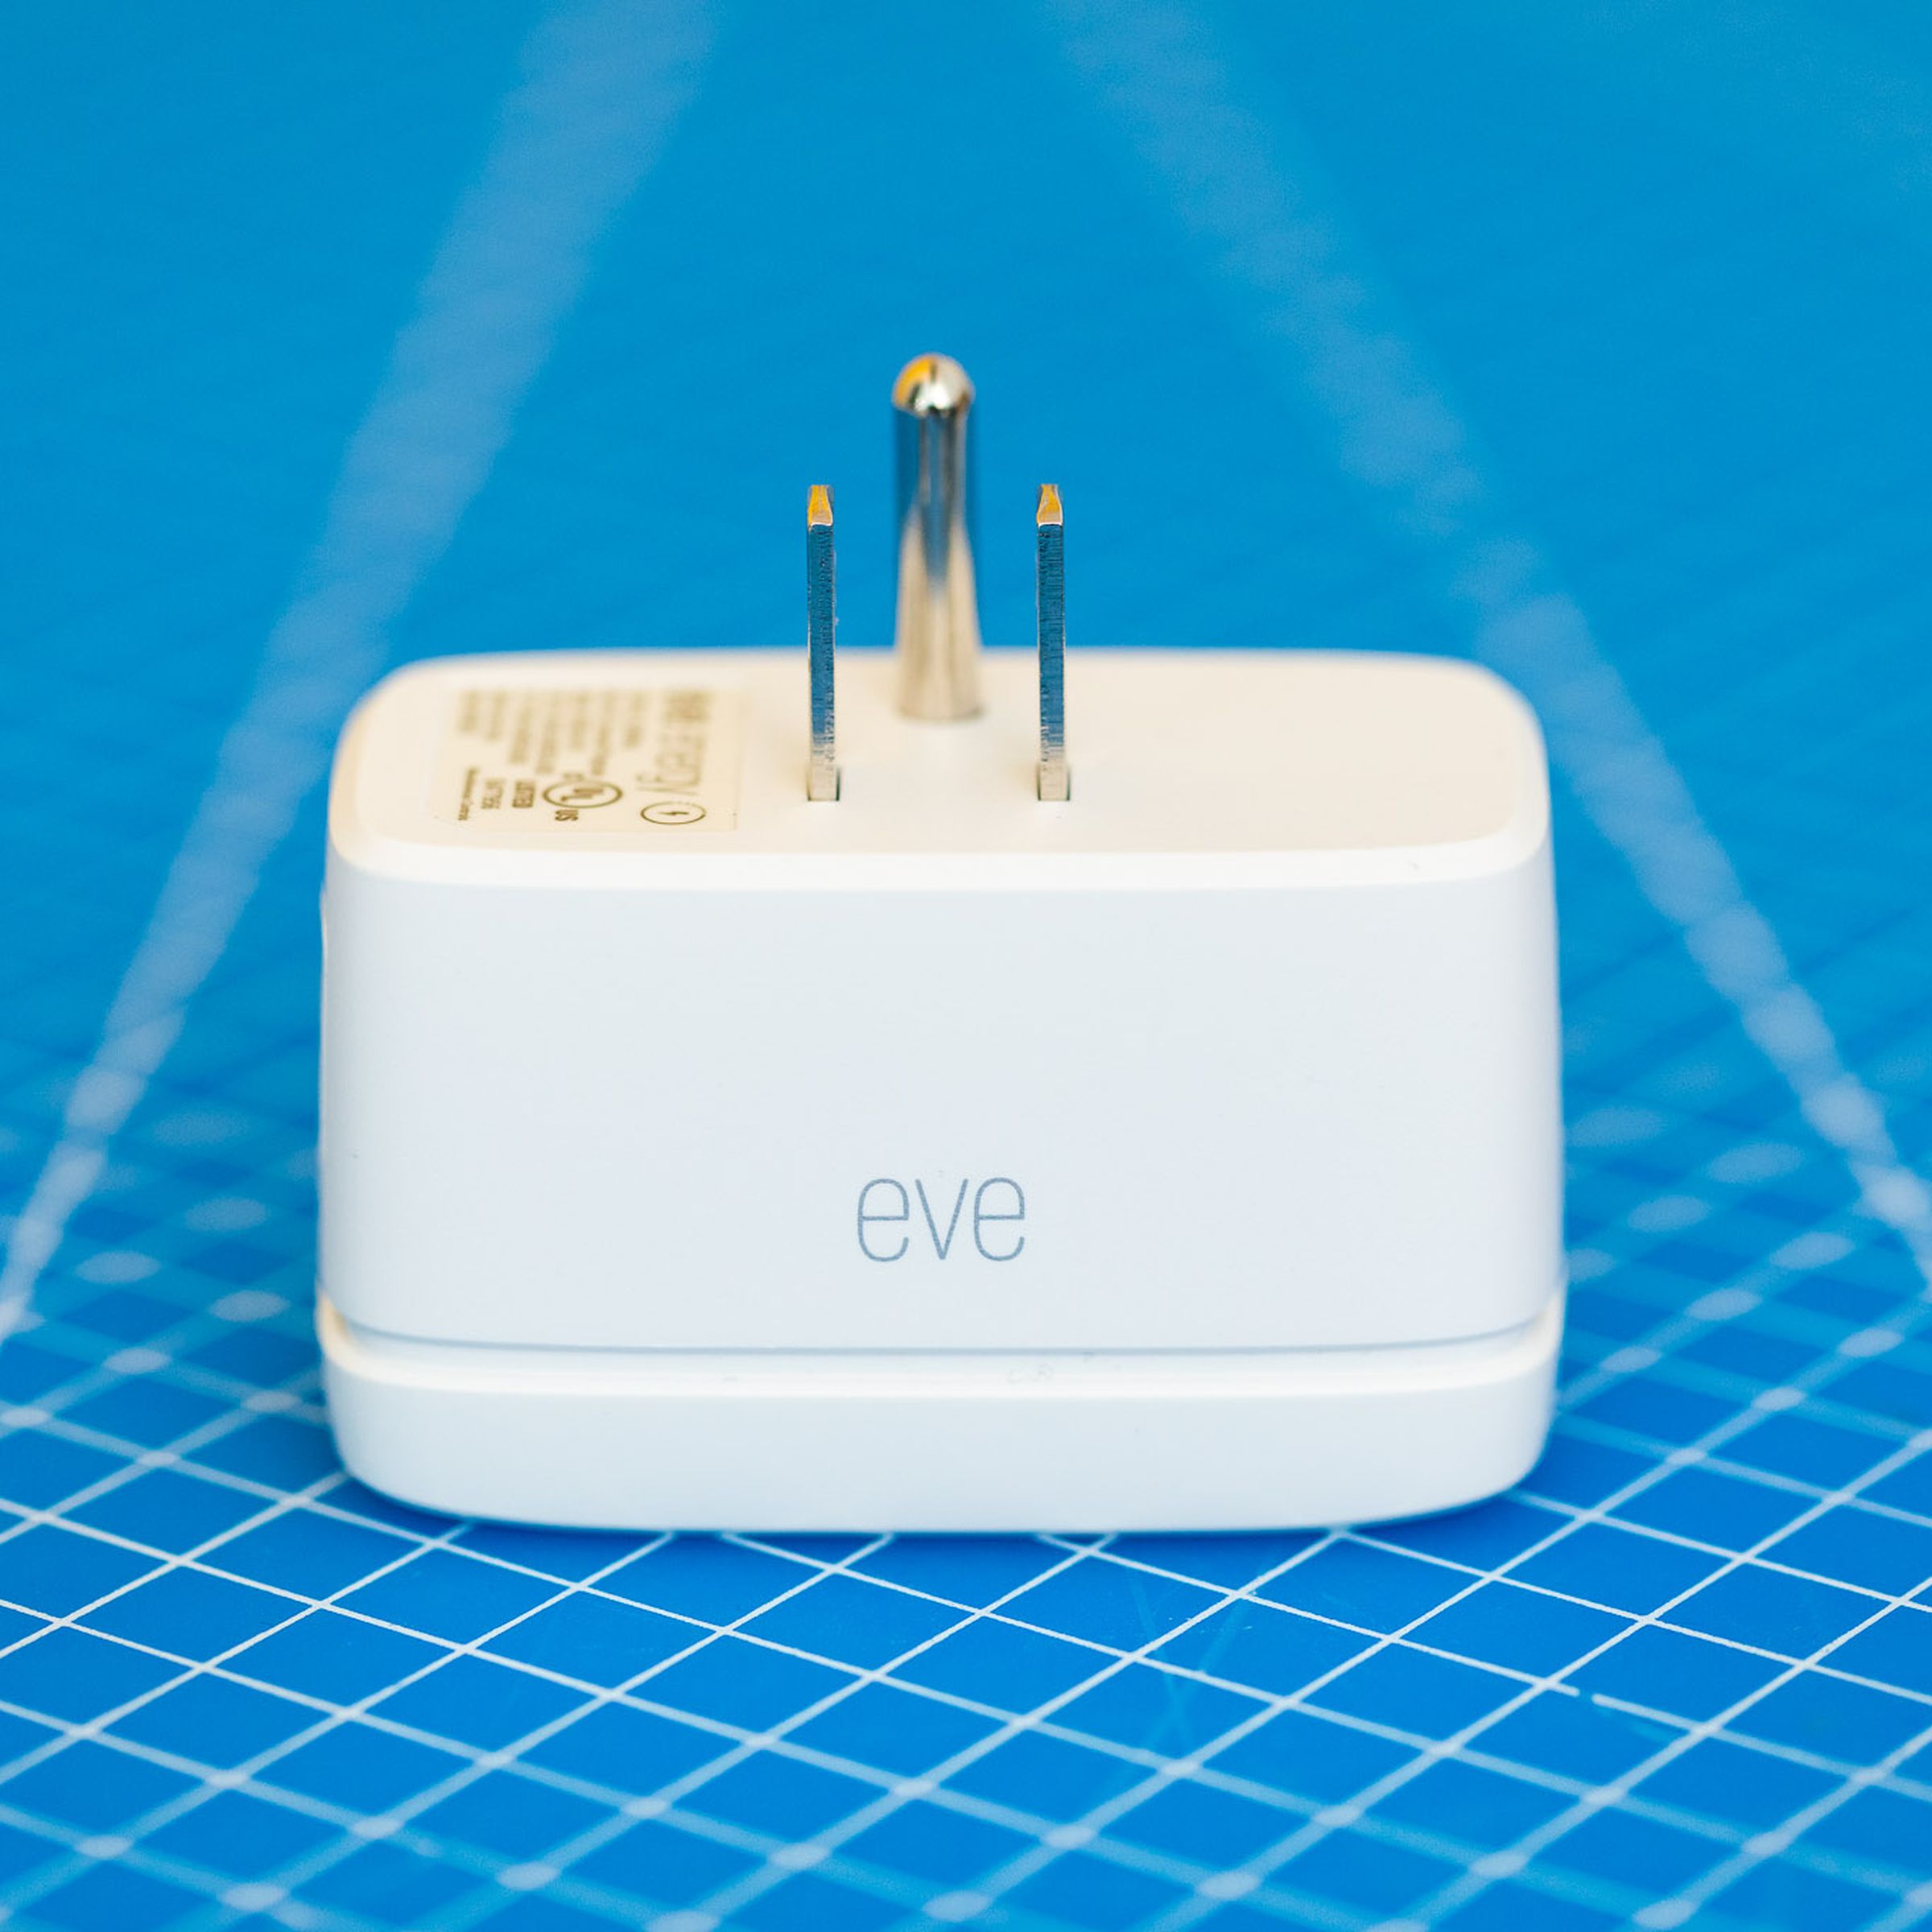 A white smart plug on a blue background